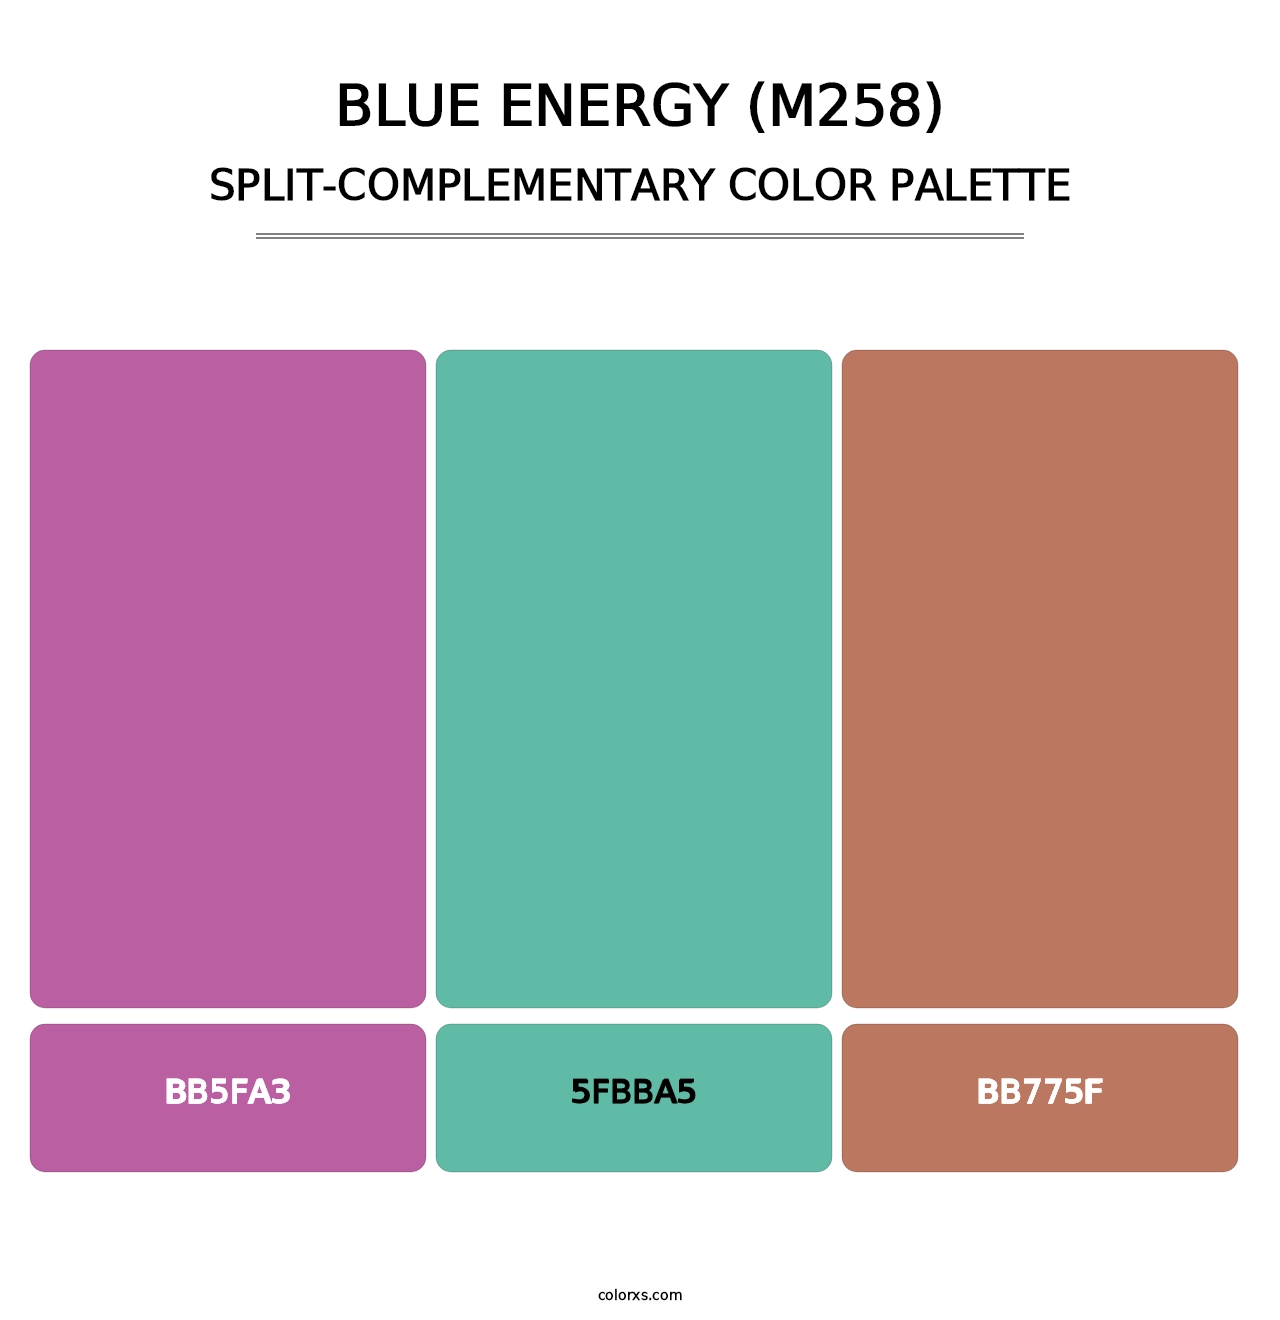 Blue Energy (M258) - Split-Complementary Color Palette